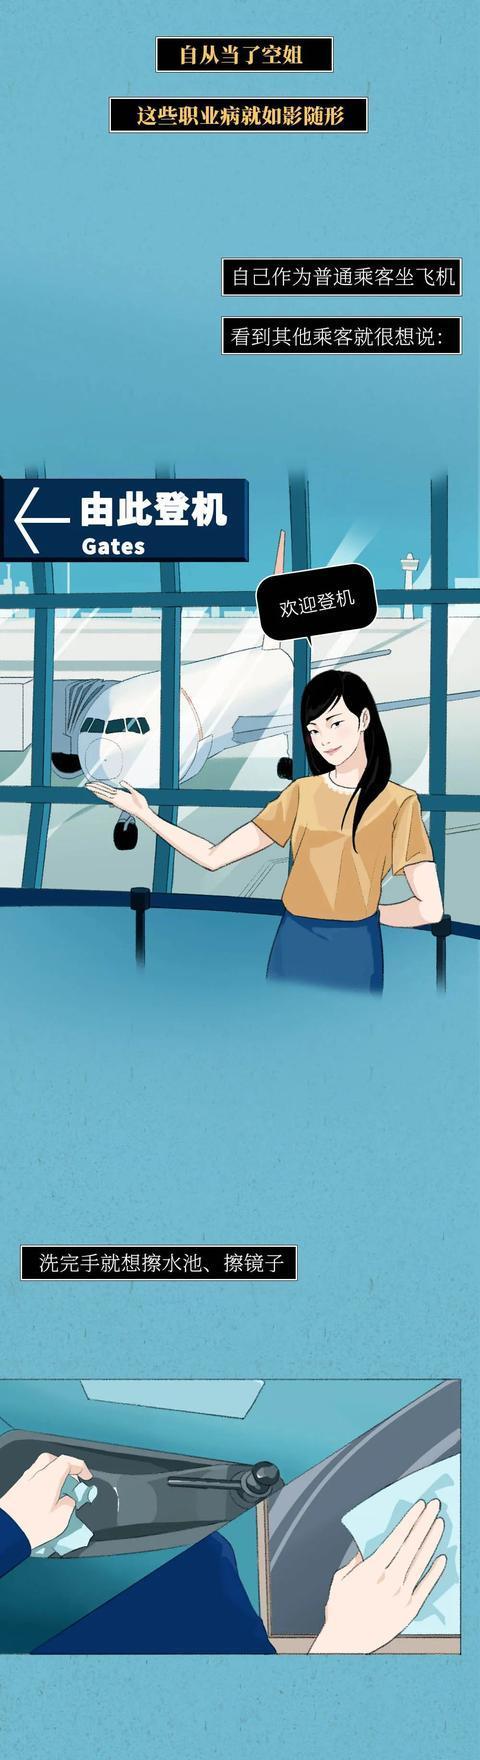 漫画：空姐背后的真实世界，这些年我们误解了